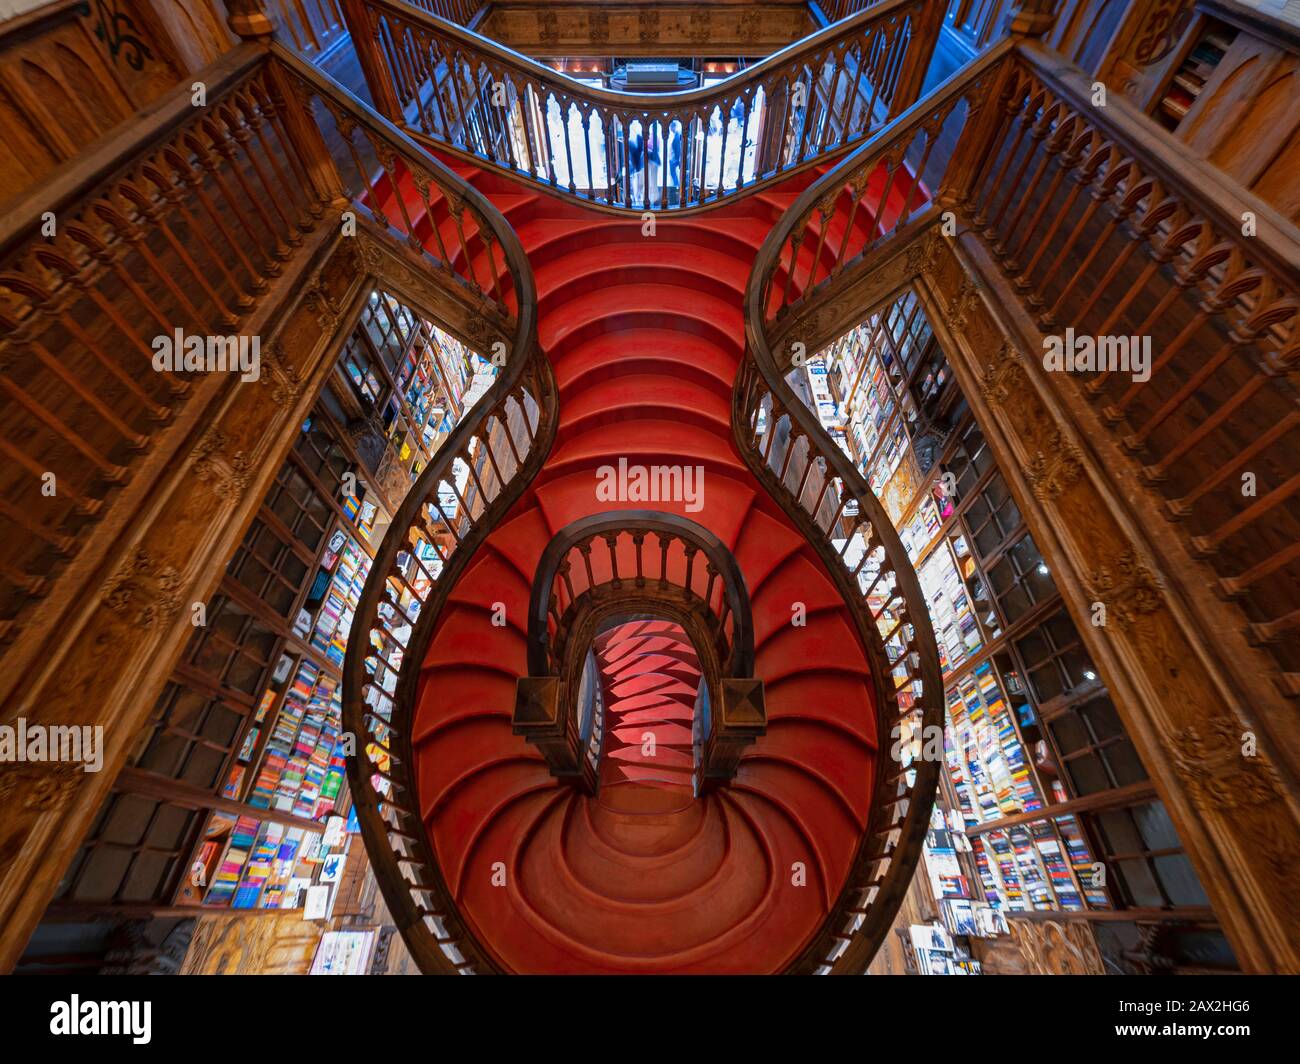 Intérieur de la librairie Lello (Portugais: Livraria Lello) montrant son célèbre escalier en bois dans le centre historique de Porto, Portugal. Banque D'Images